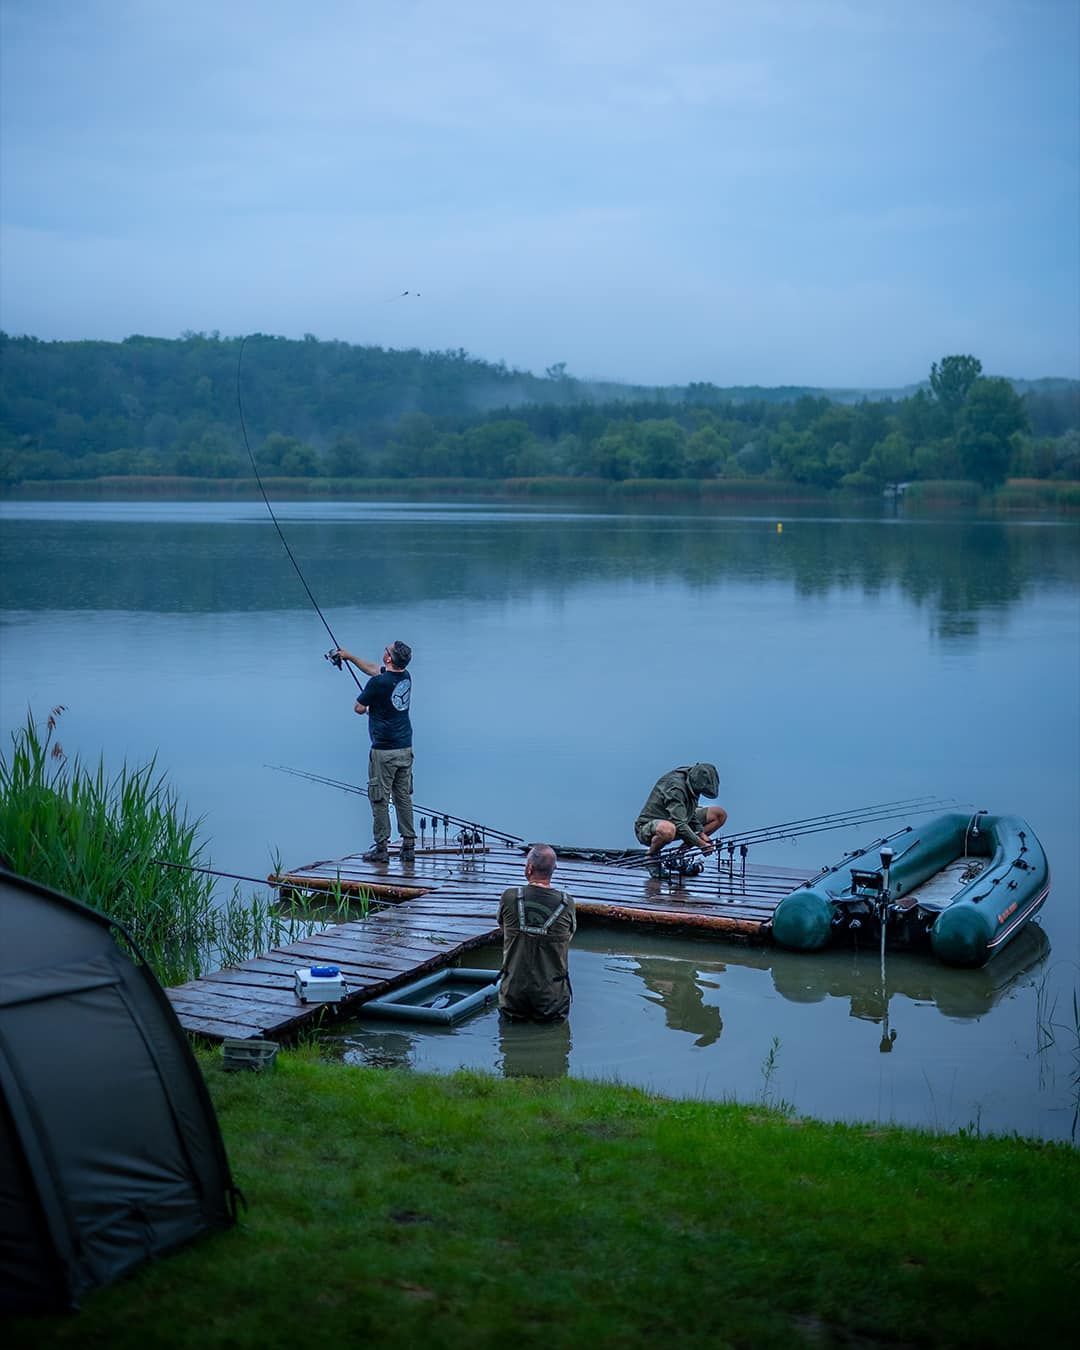 Dan­ny Fairbrasst örömmel tölti el, hogy Magyarországon sokan szeretnek horgászni